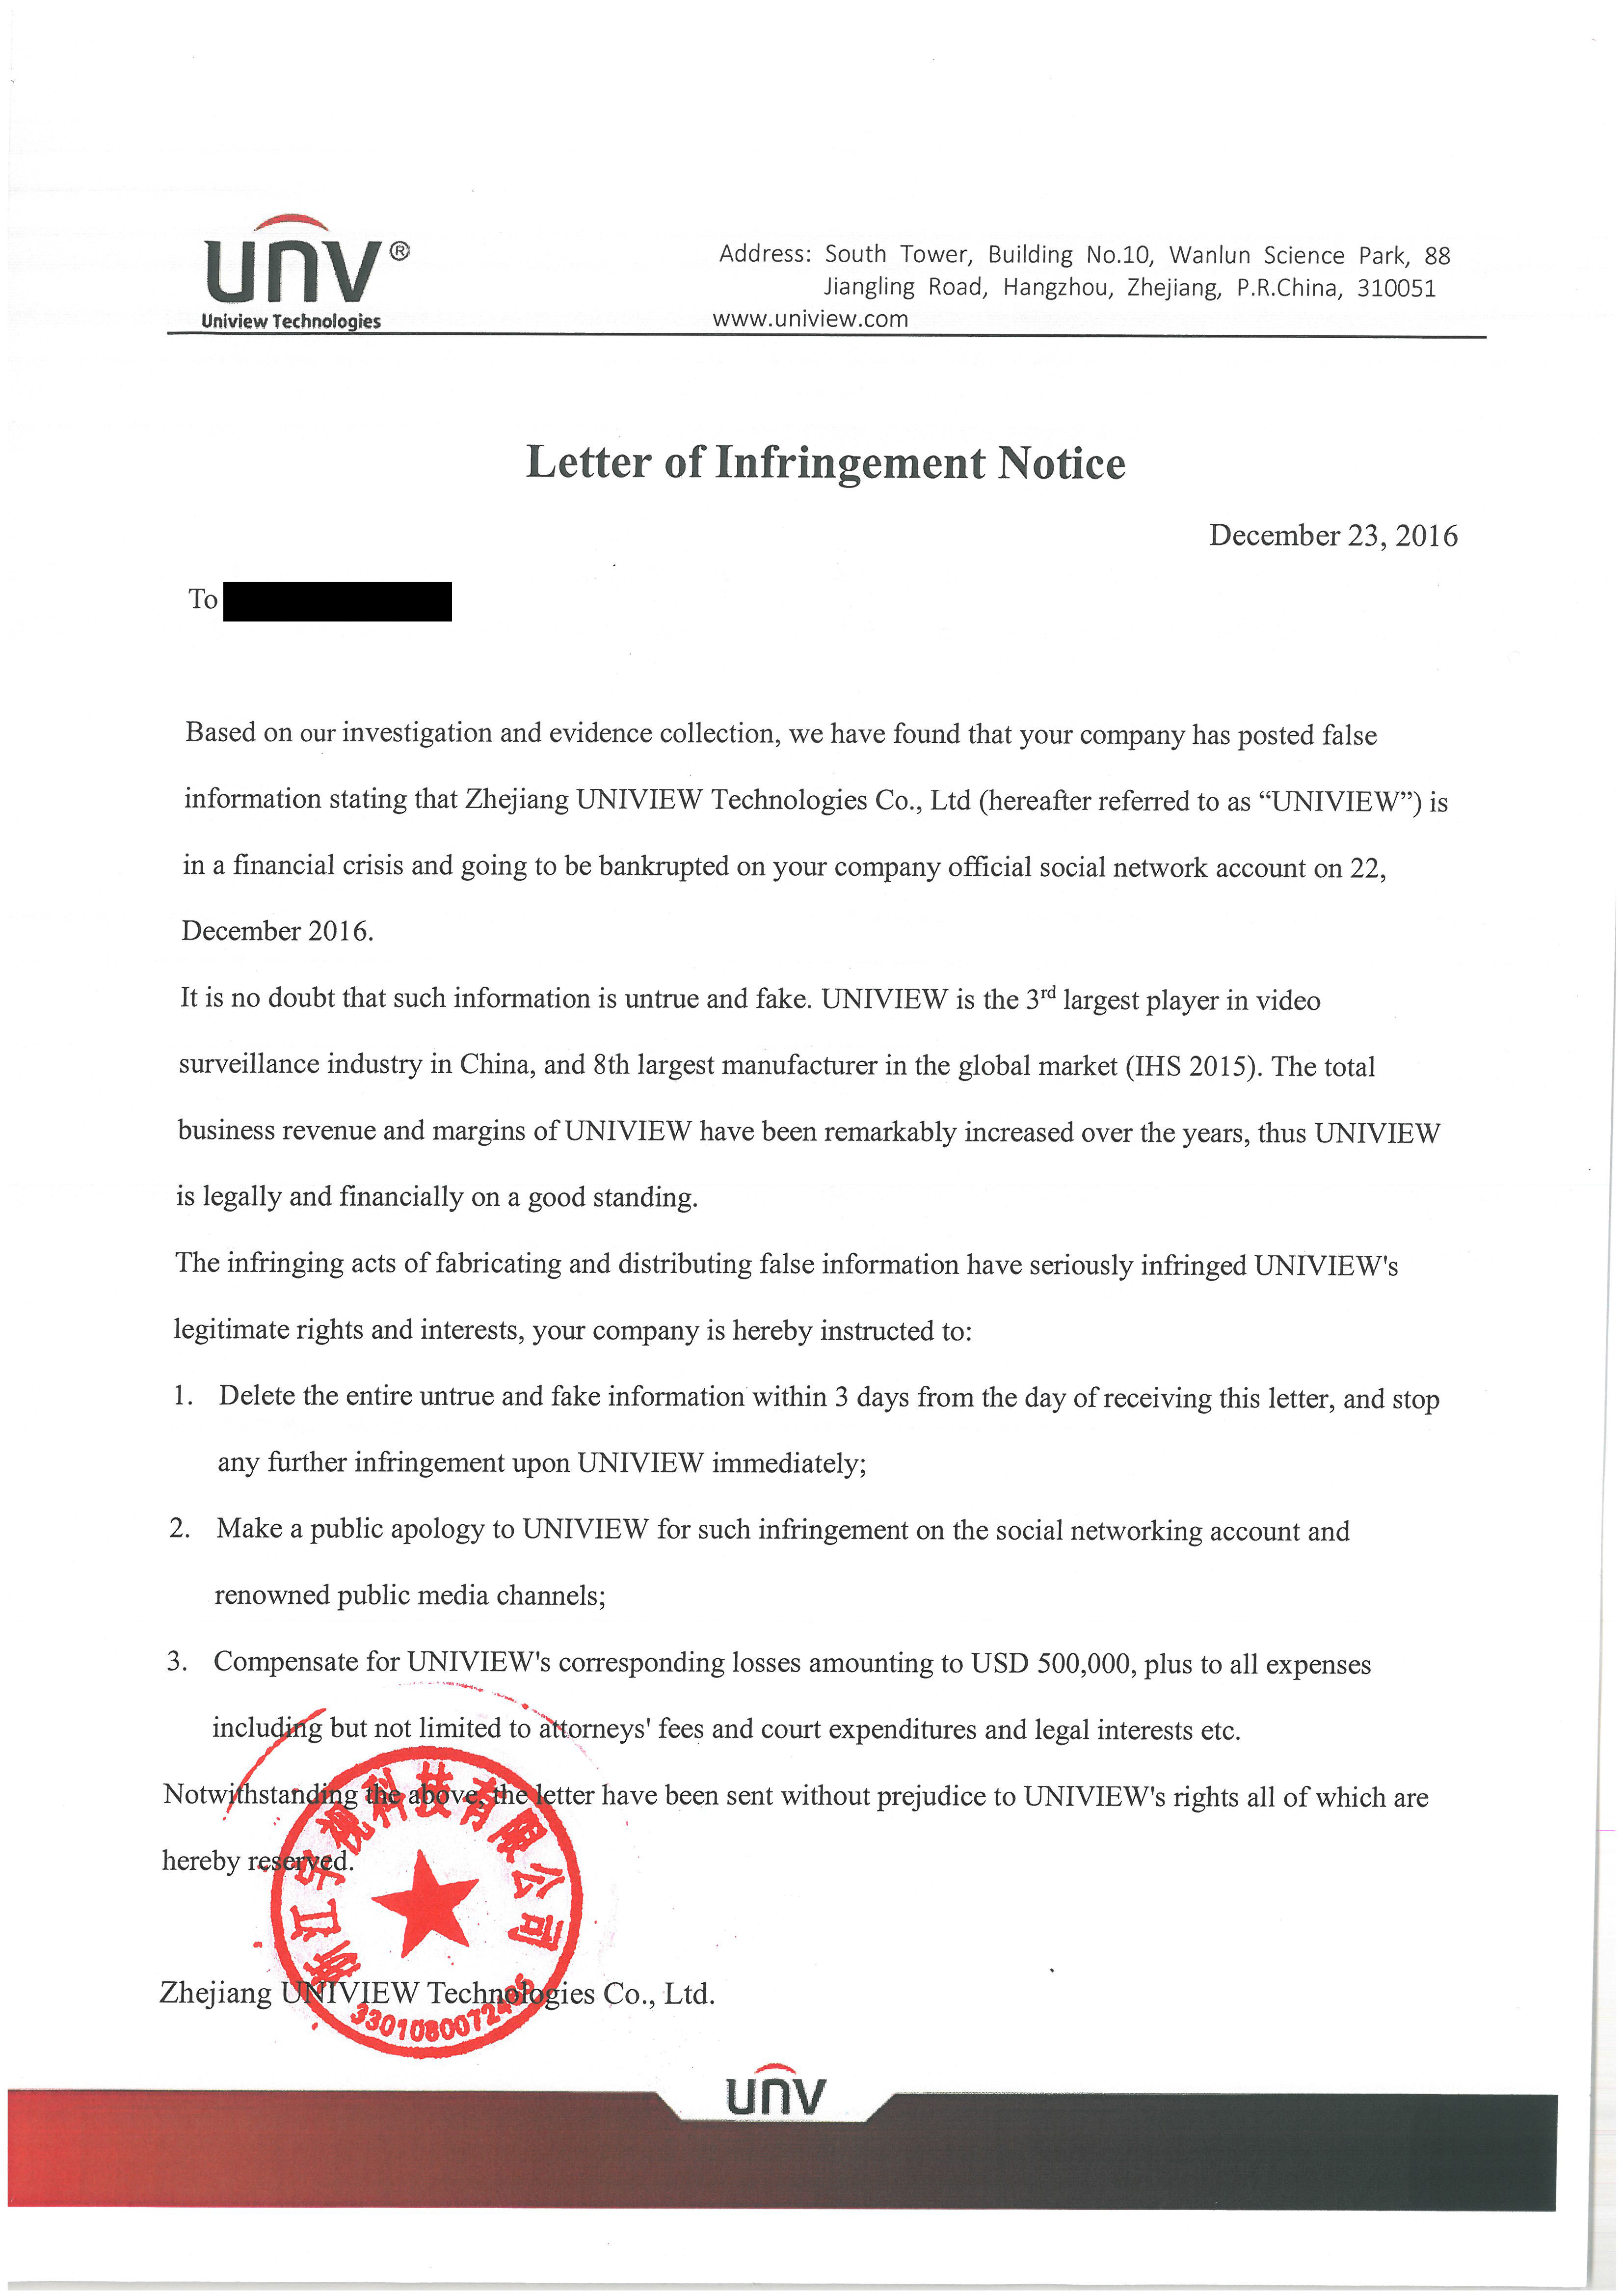 نامه شرکت Uniview در خصوص تخلف صورت گرفته بر علیه این شرکت